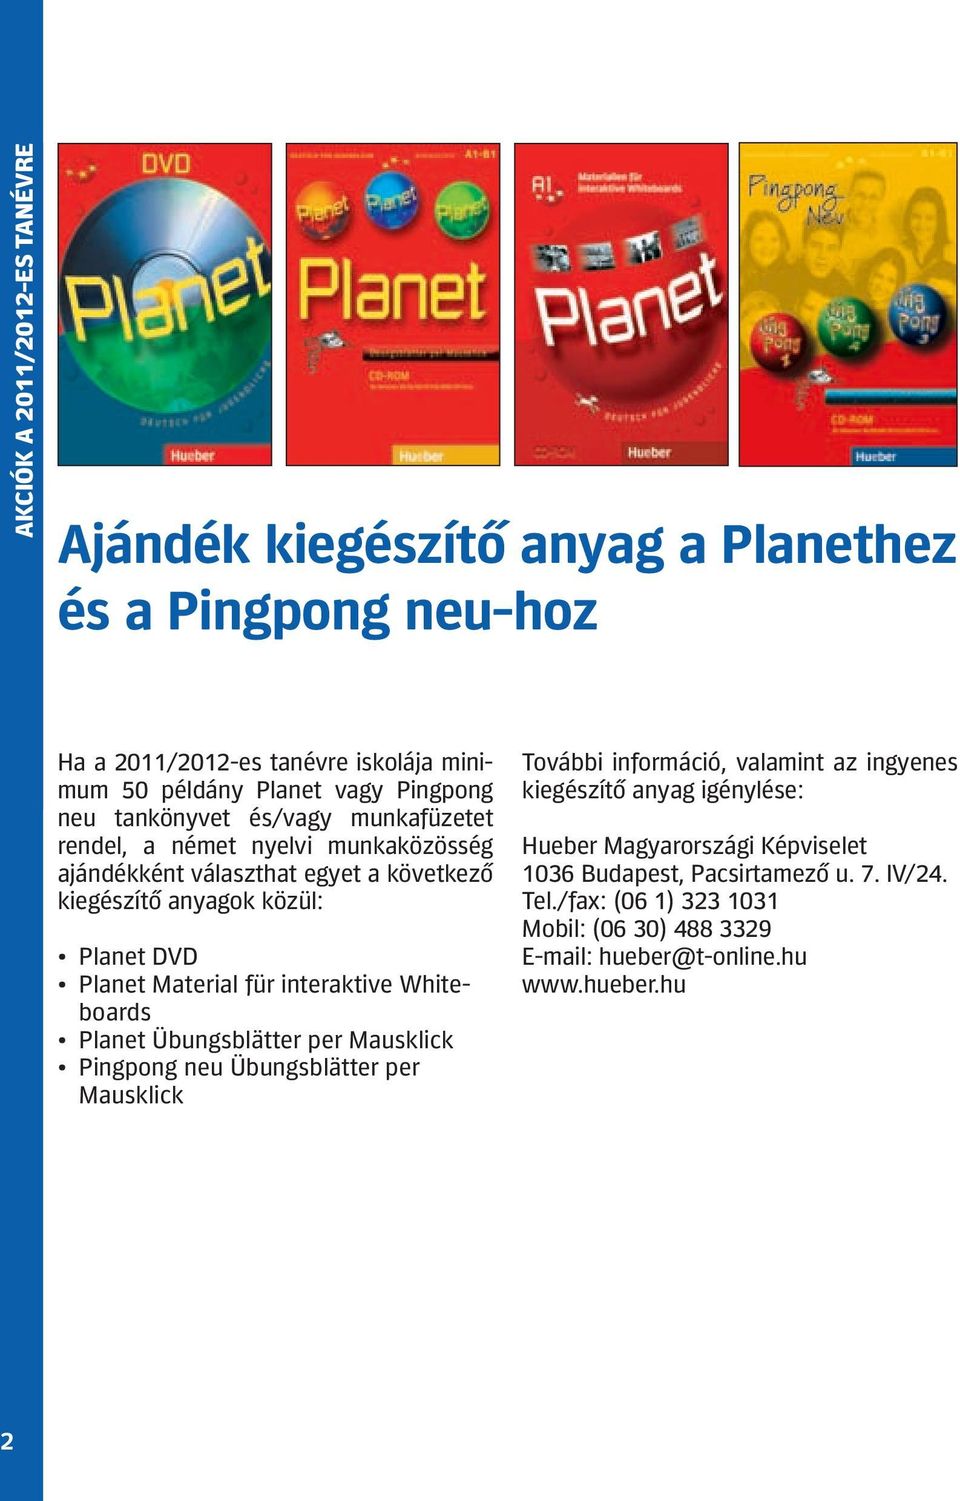 Material für interaktive Whiteboards Planet Übungsblätter per Mausklick Pingpong neu Übungsblätter per Mausklick További információ, valamint az ingyenes kiegészítő anyag